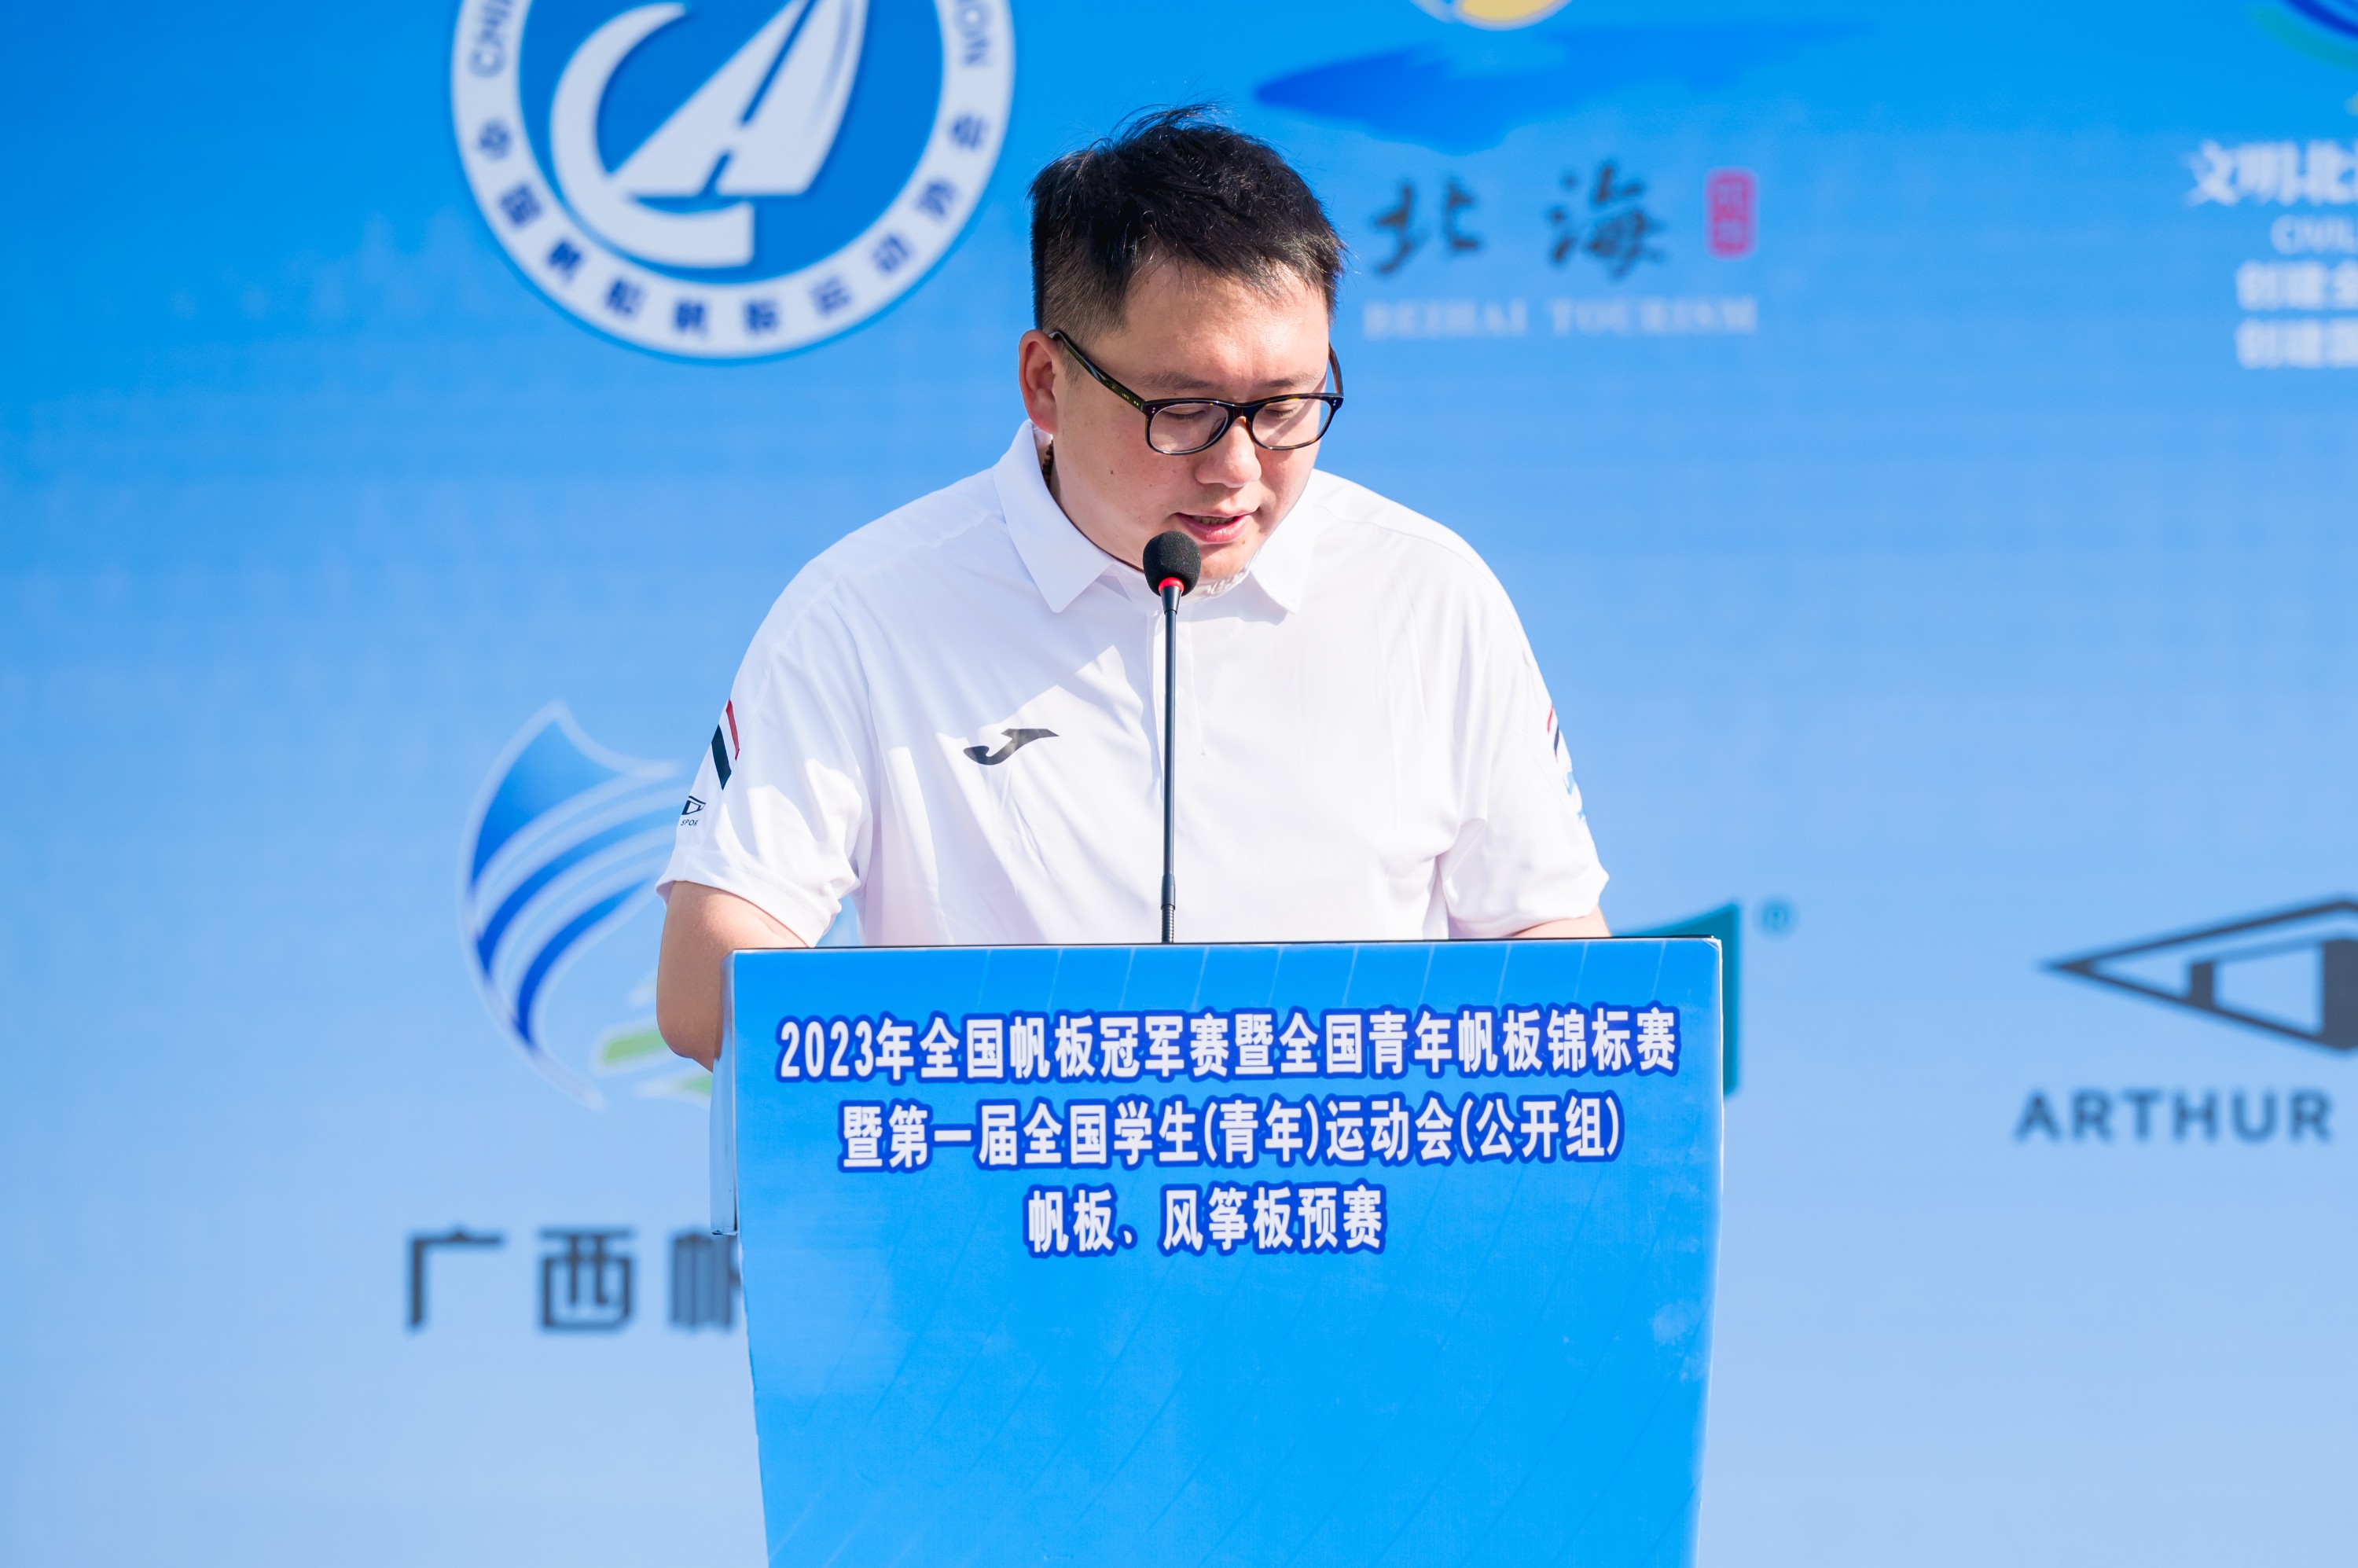 中国帆船帆板运动协会副秘书长王佳鑫致辞.jpg